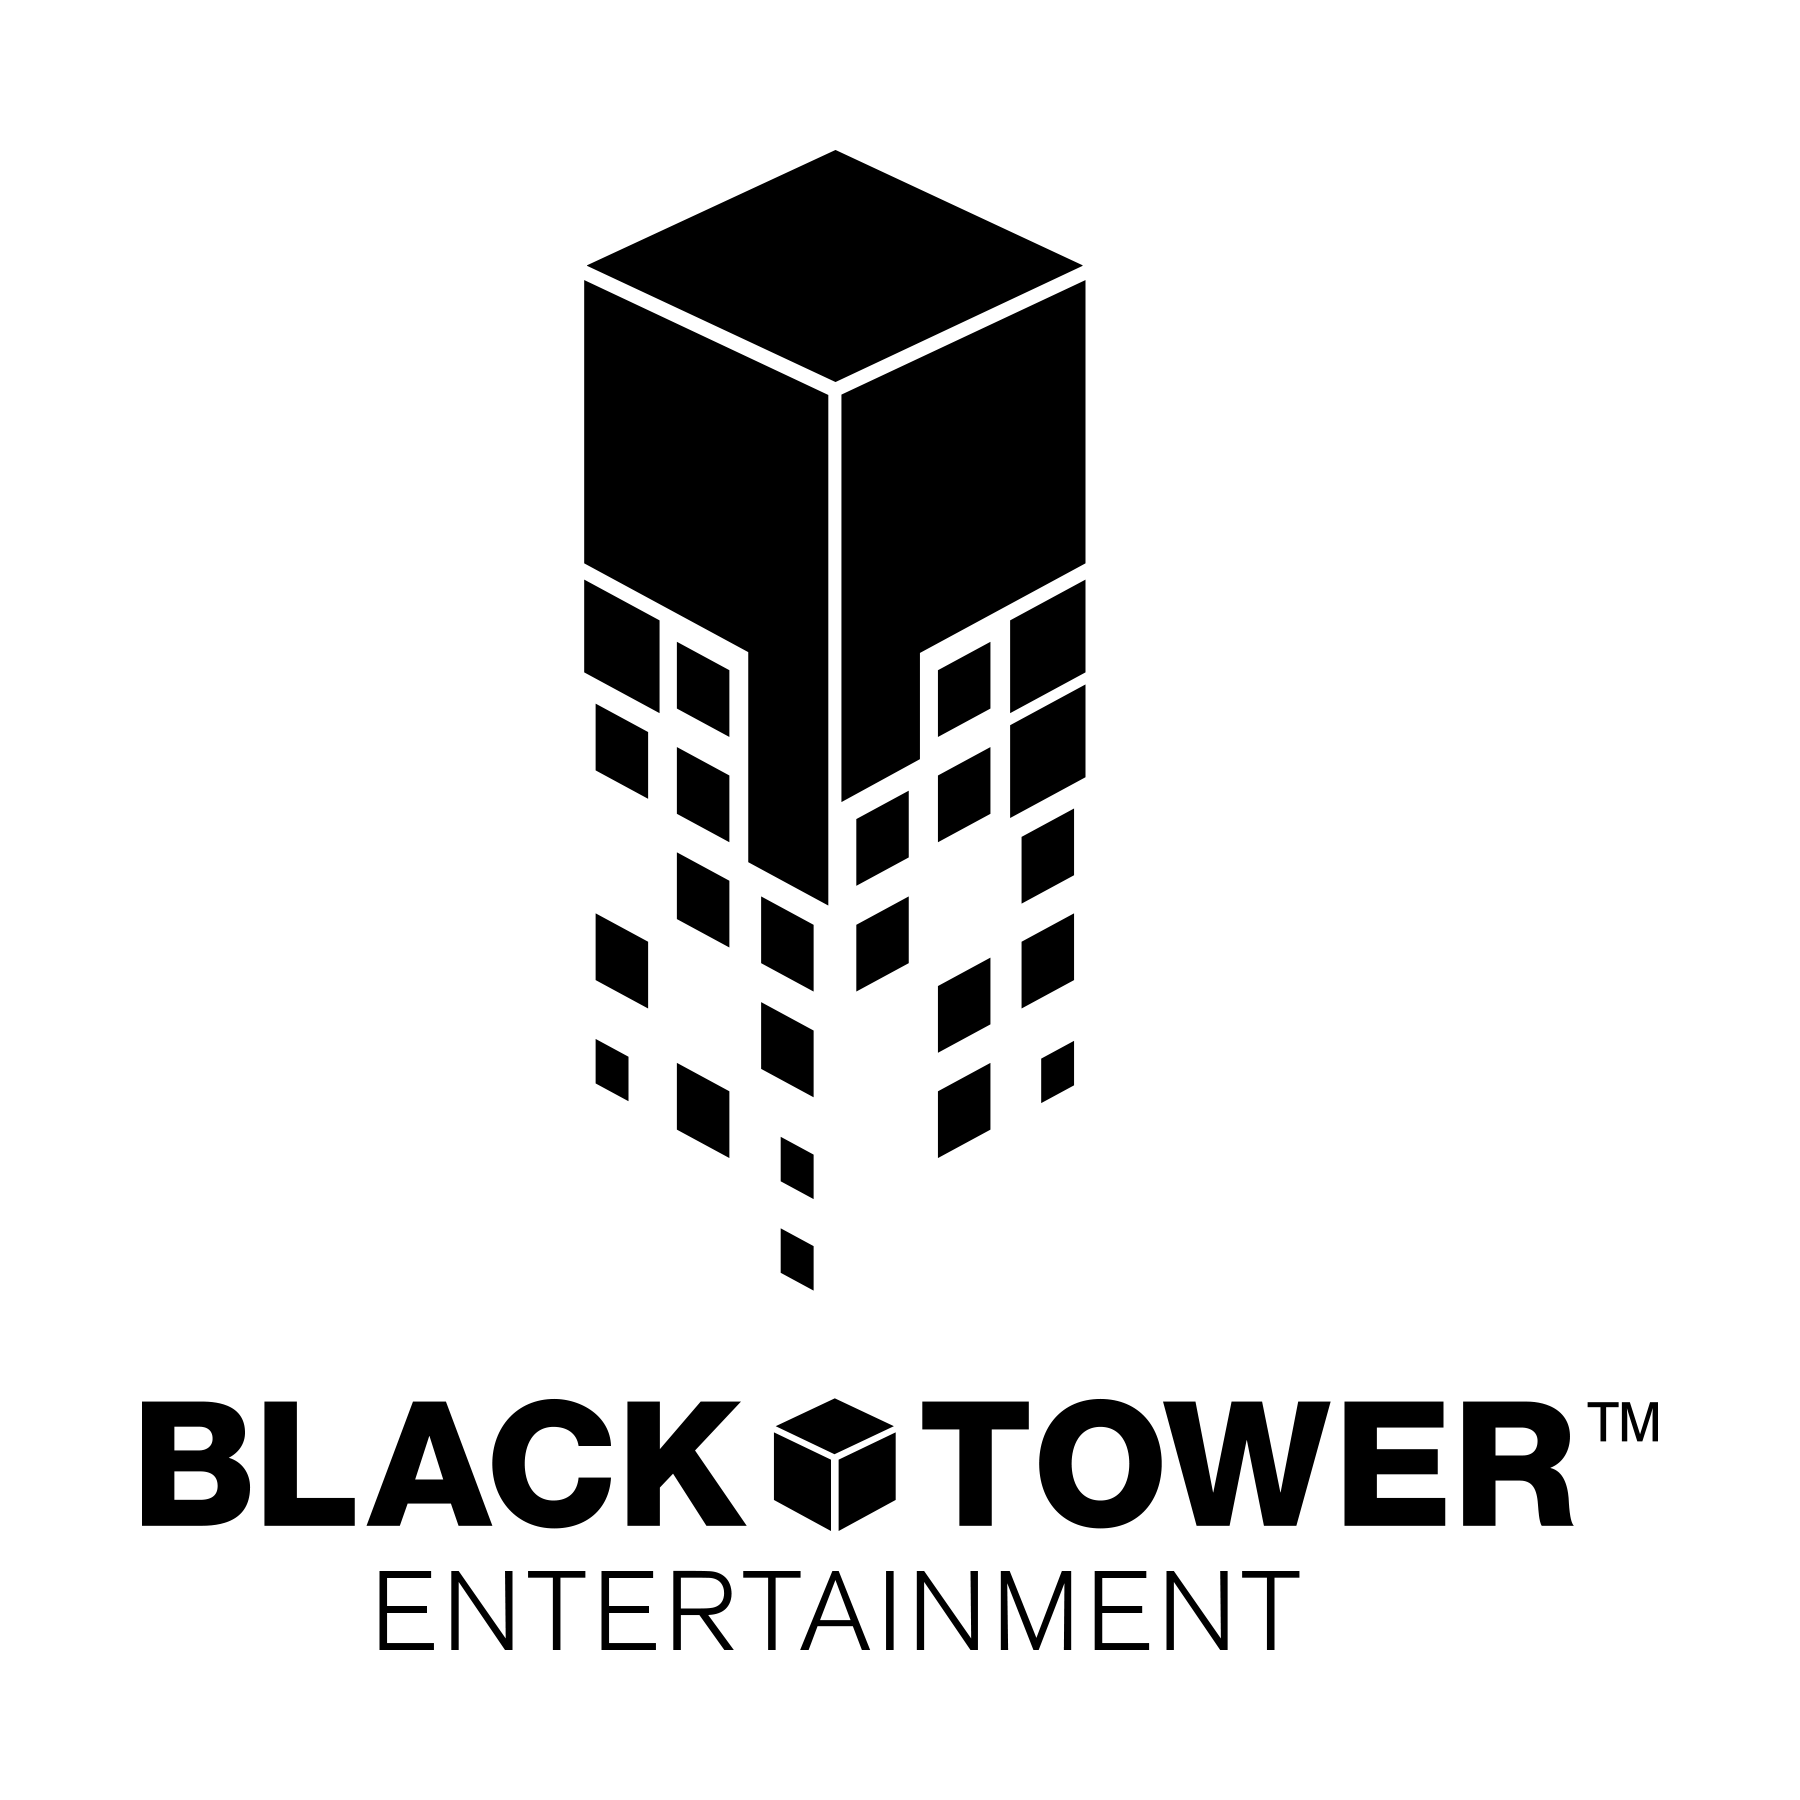 Towers агентство недвижимости